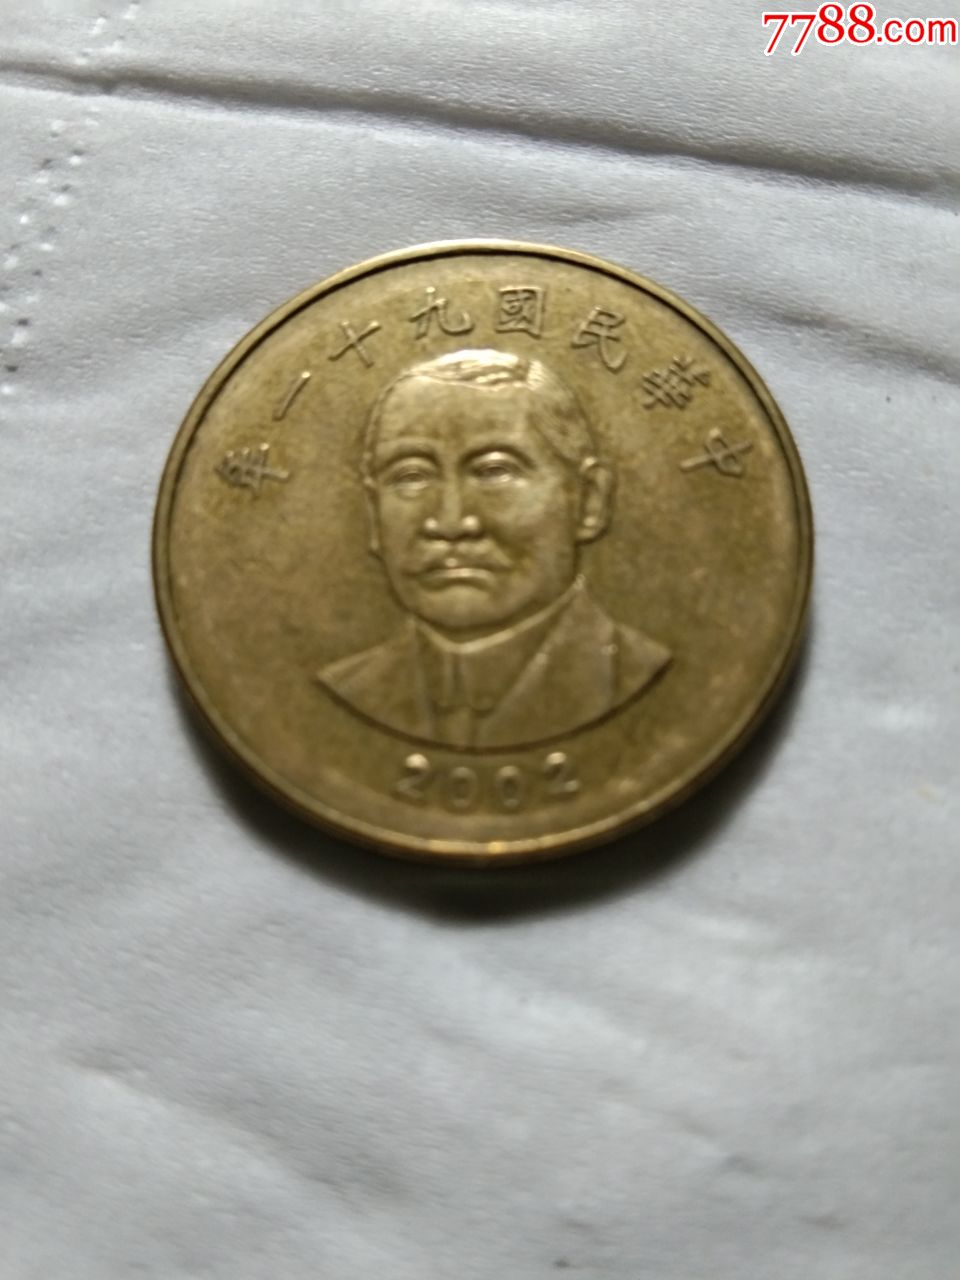 台湾人民币头像图片